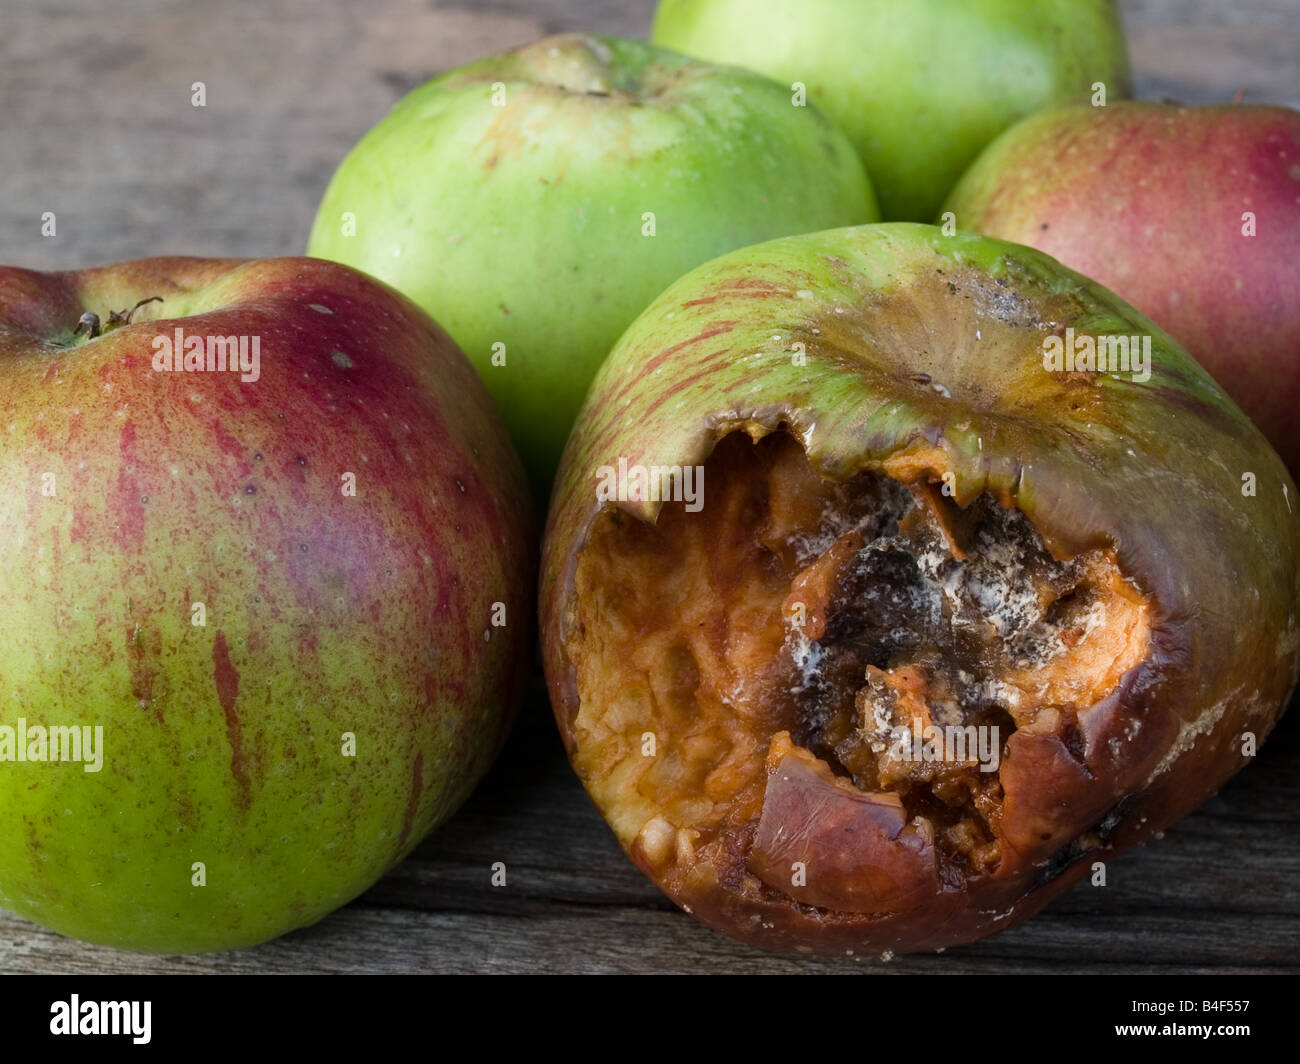 rotting apple decaying fruit Stock Photo